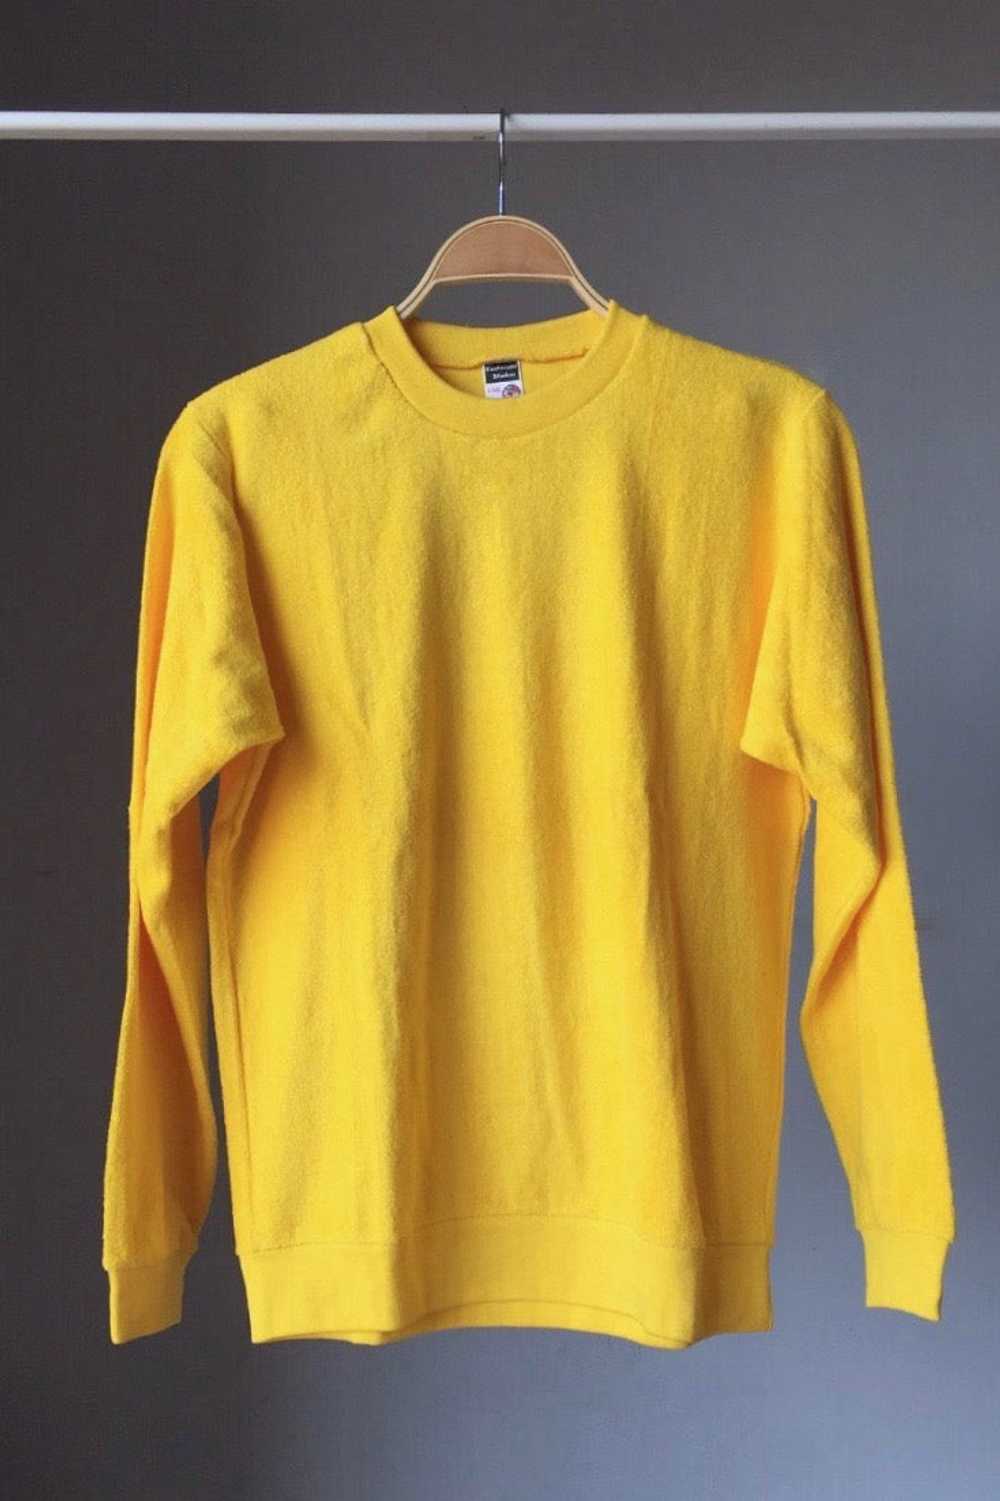 RESTOSANA Vintage Terry Sweatshirt - image 4